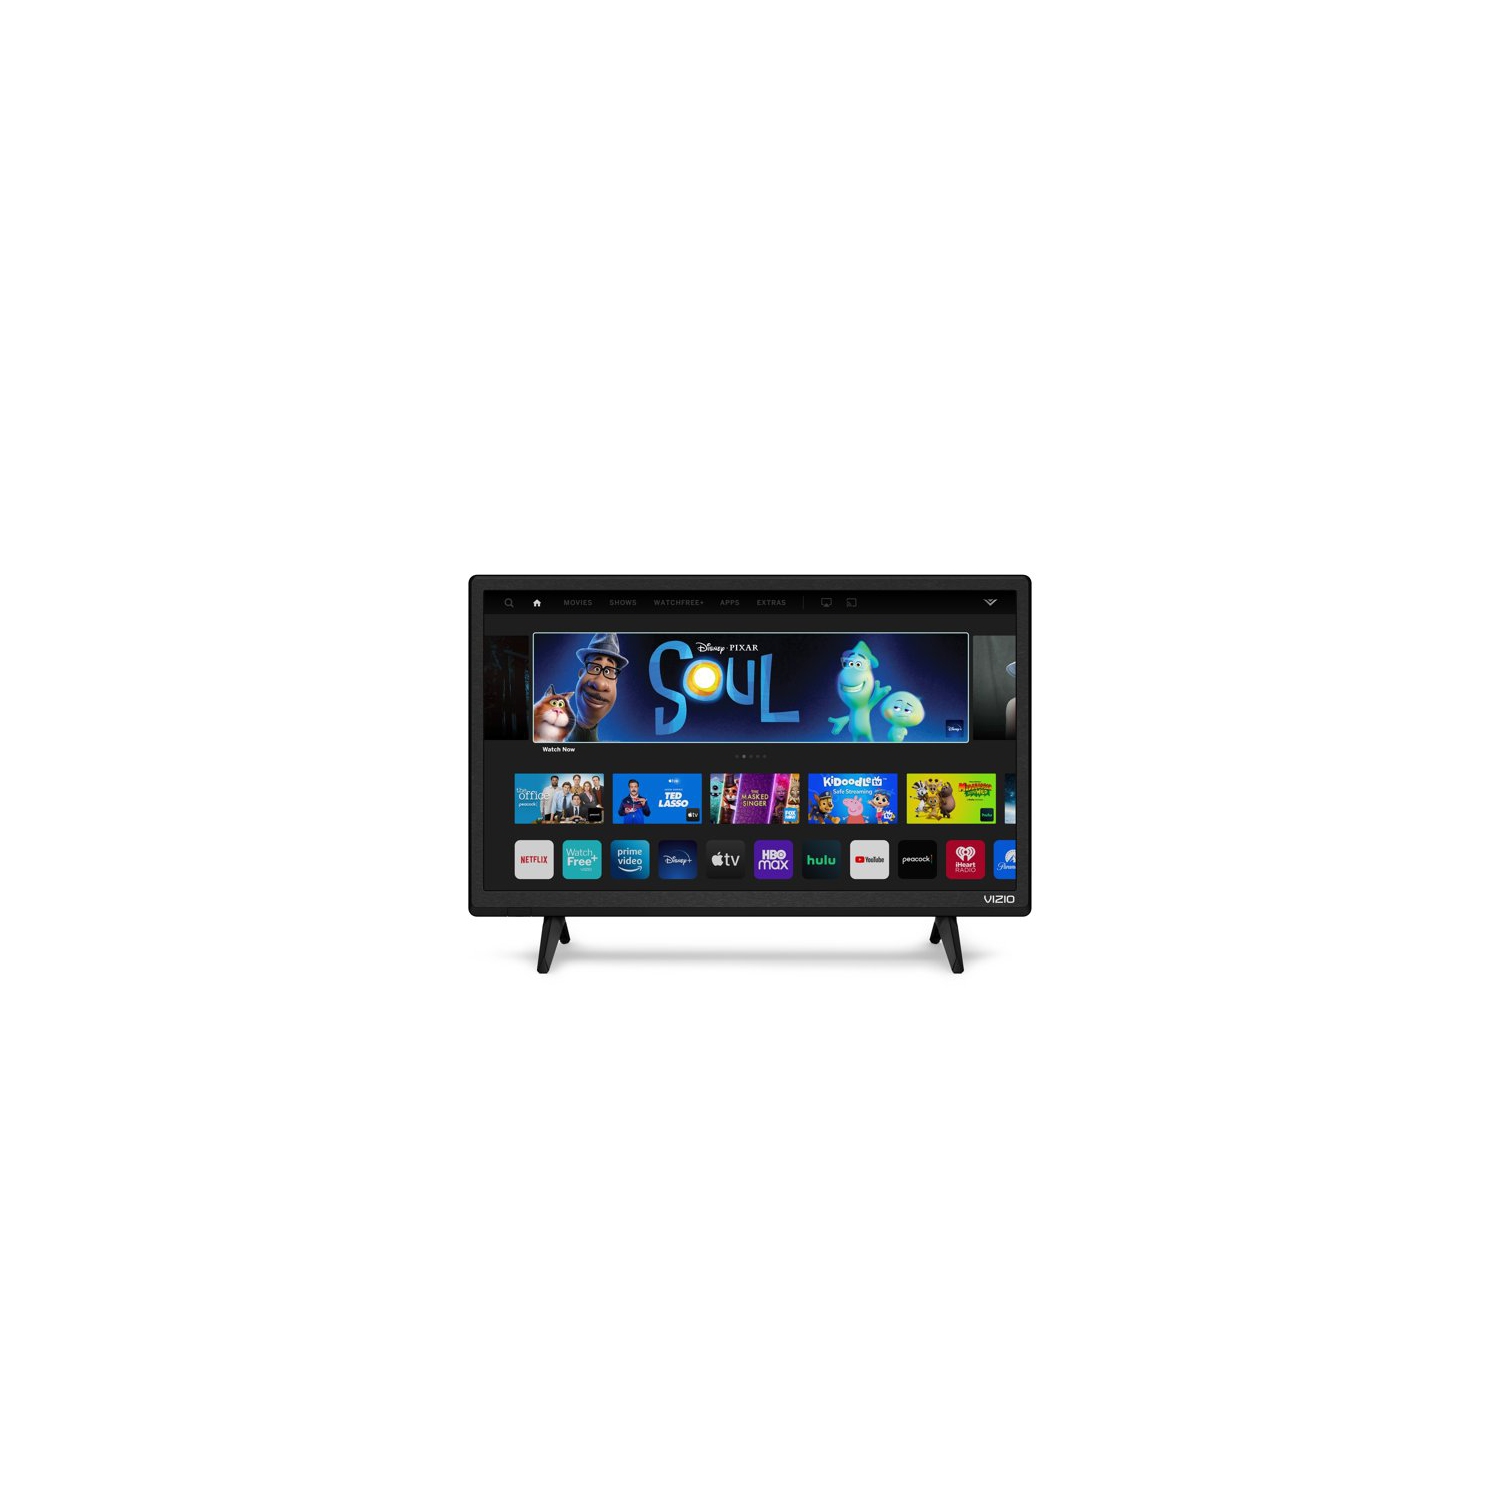 VIZIO D-Series 24” LED Smart TV 720P (D24H-J09) - Open Box - (Condition 10/10)